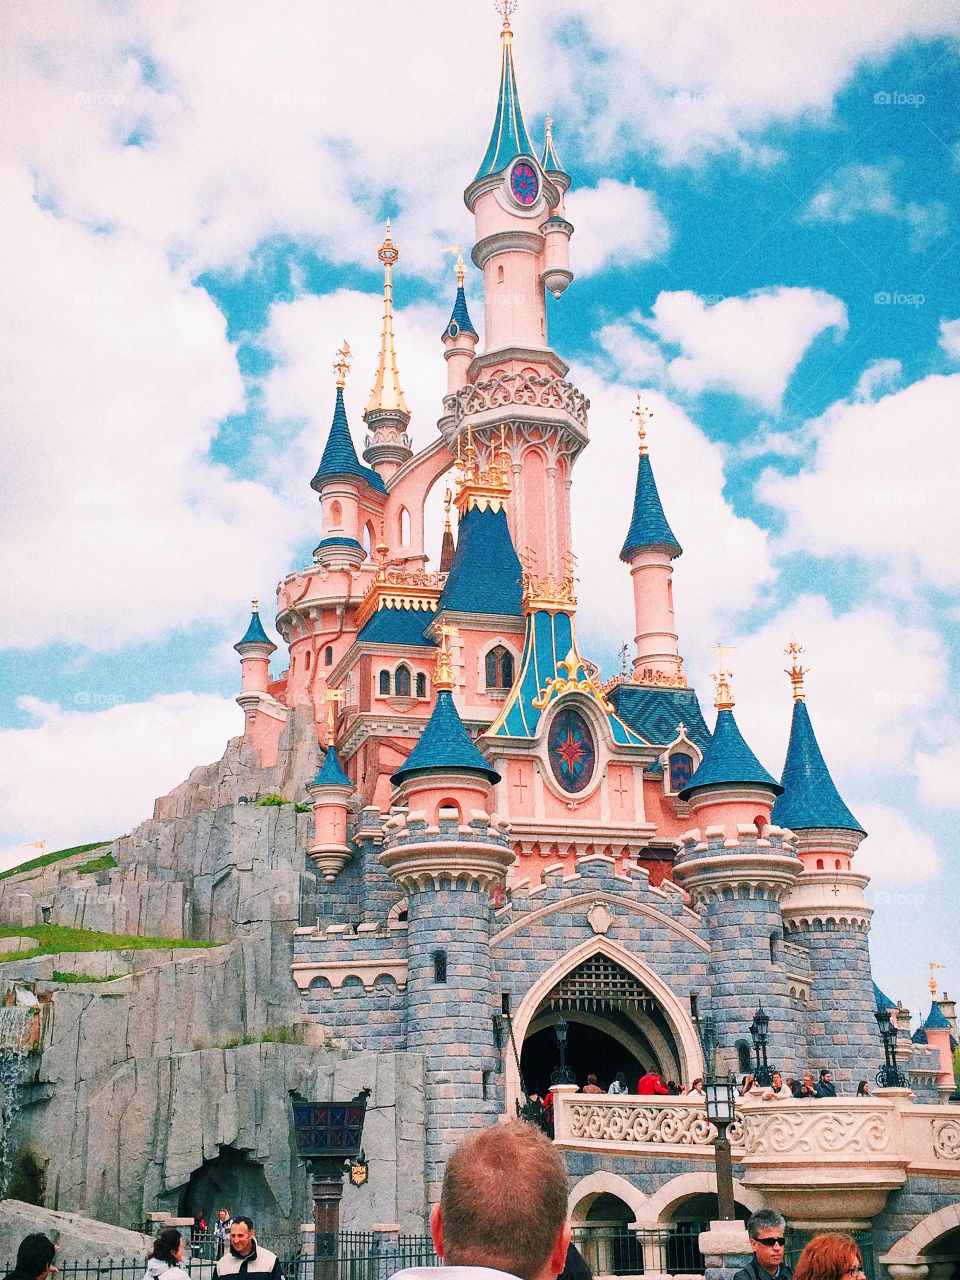 Sleeping Beauties Castle. My third visit to Disneyland Paris.